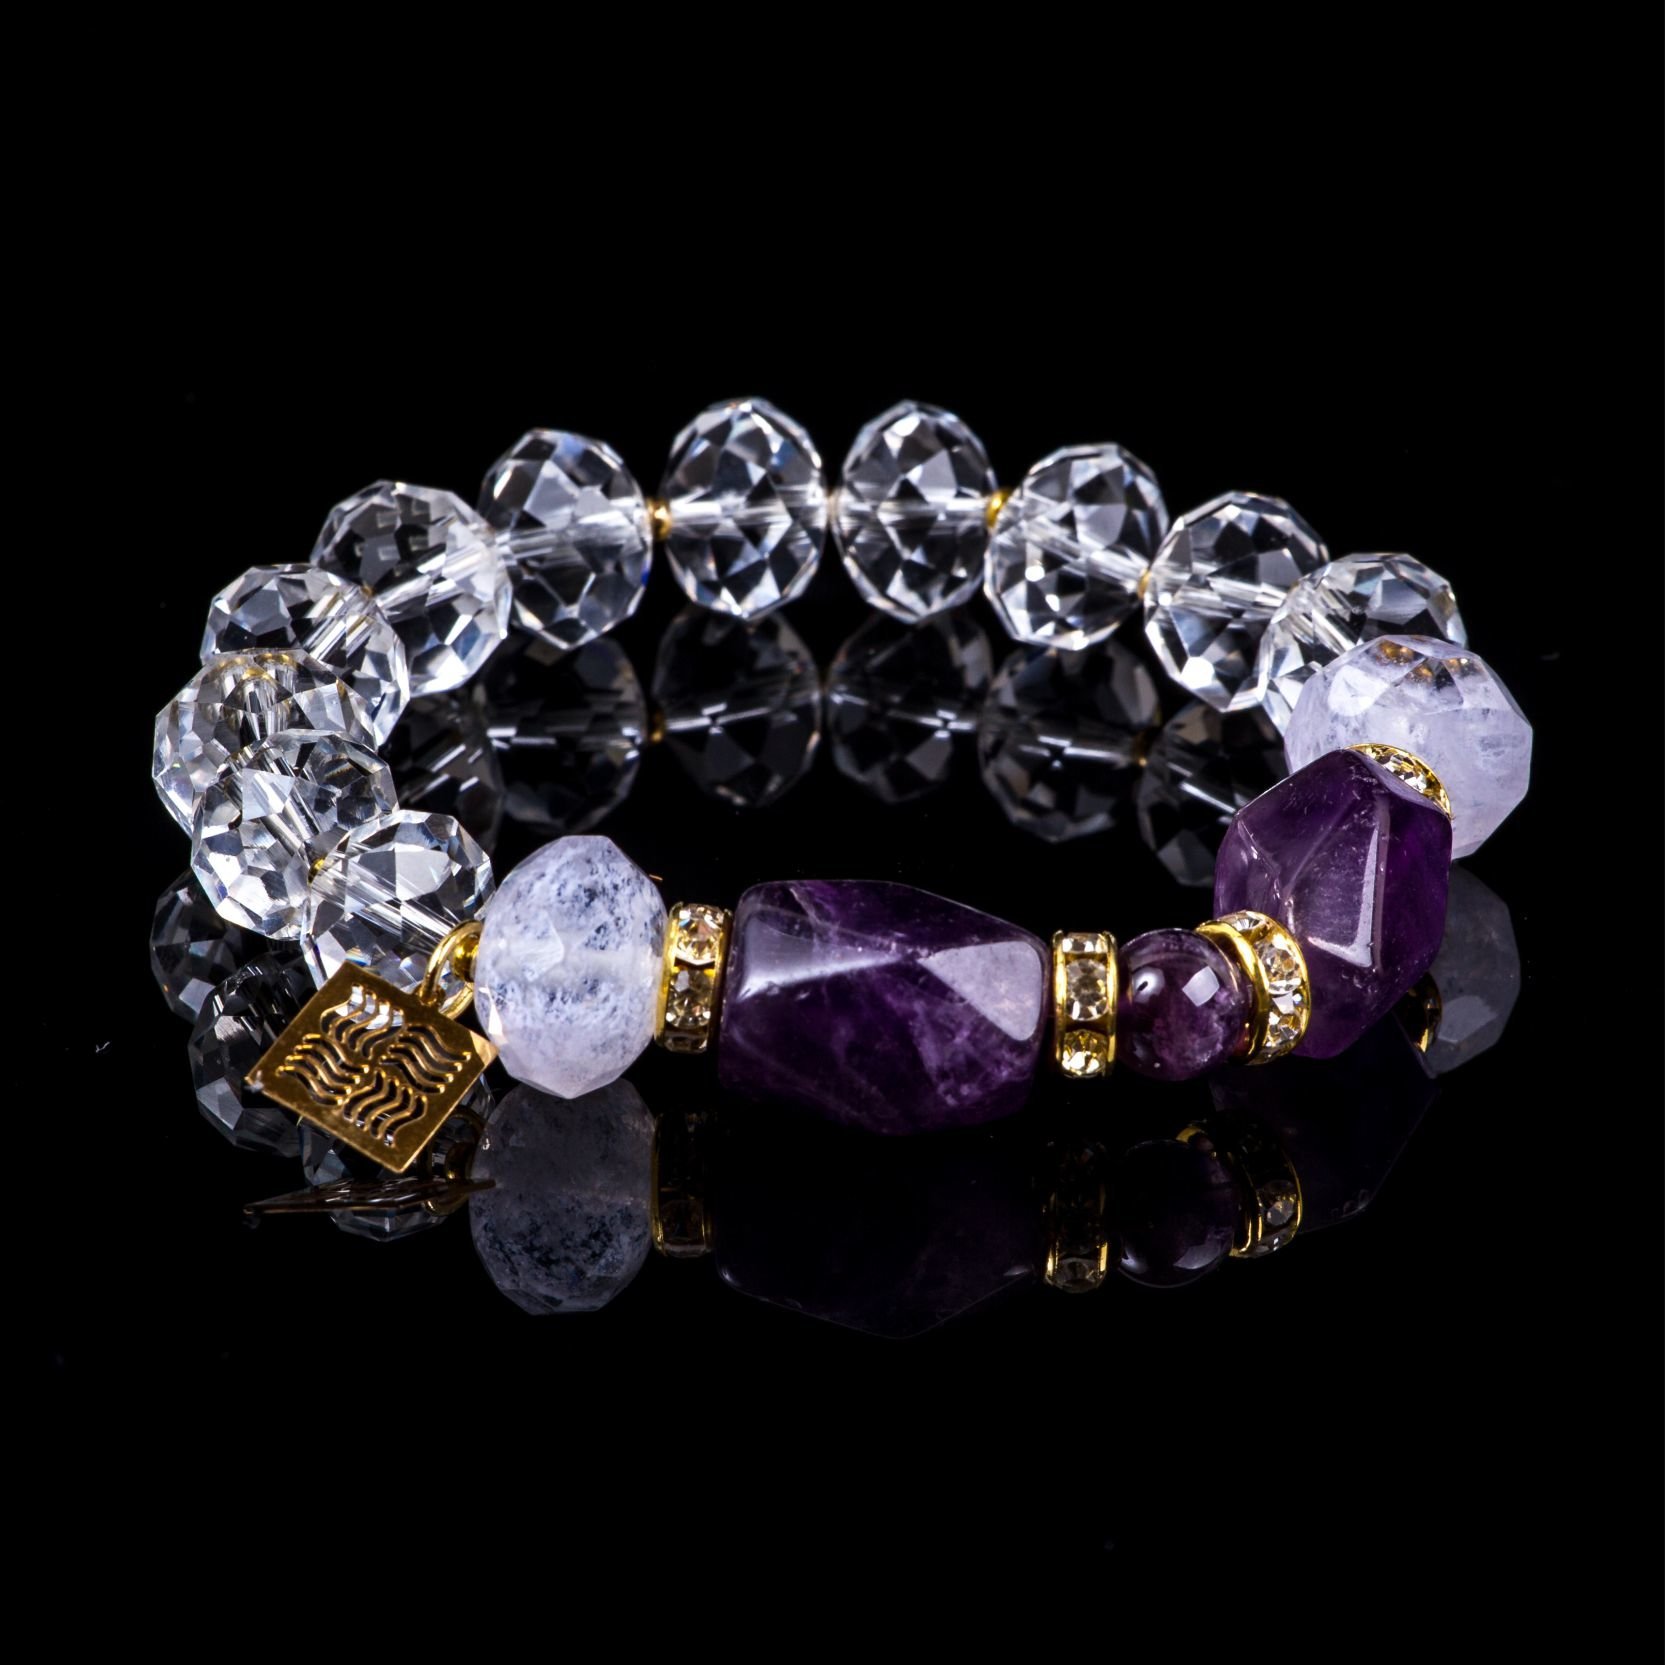 Bracelet of the collection "Crystal Symphony"